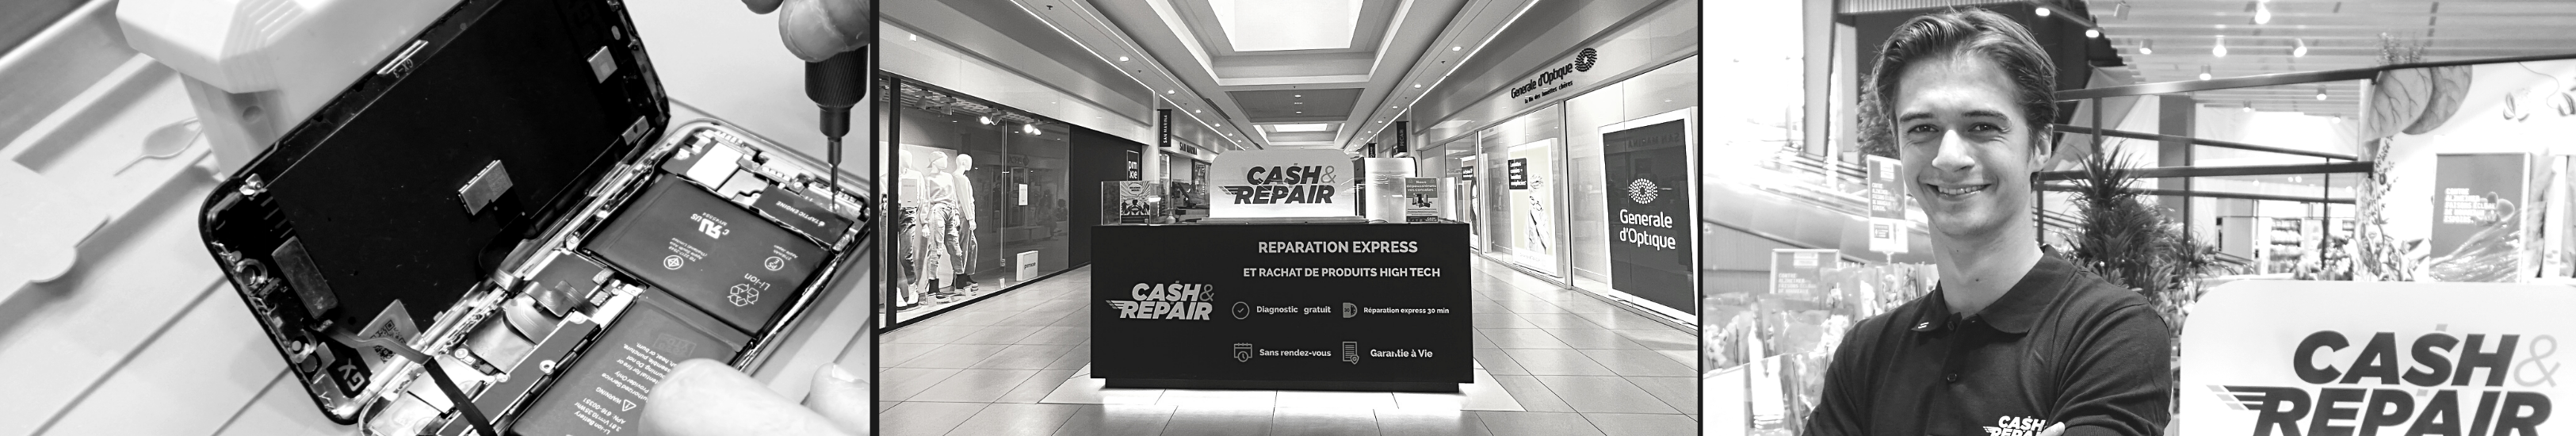 - Atelier de réparation Cash and Repair Royan